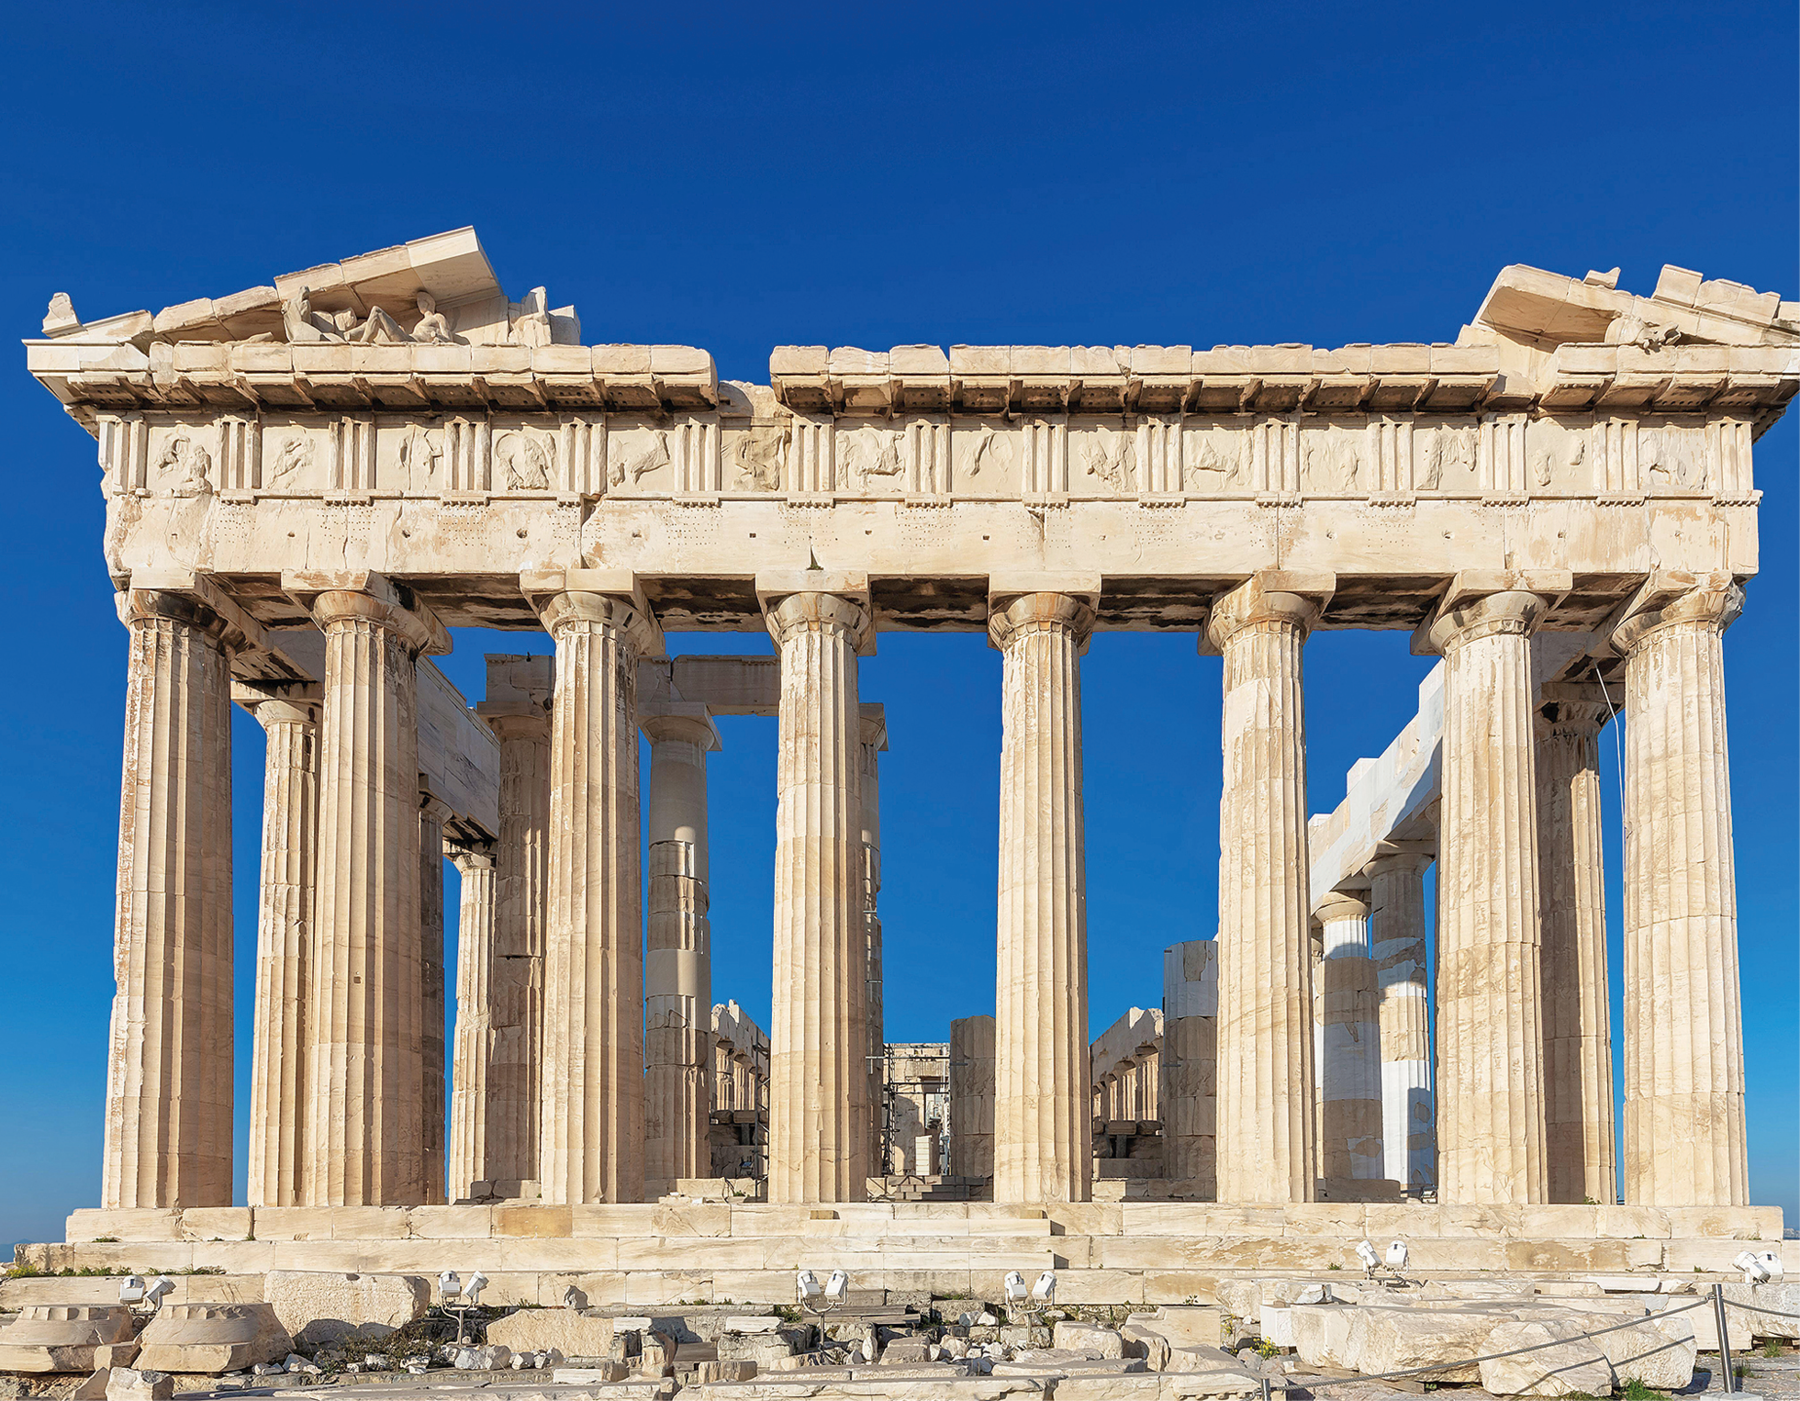 Fotografia. Vista frontal do Partenon, construção grega em ruínas com colunas cilíndricas e degraus. Céu azul sem nuvens.